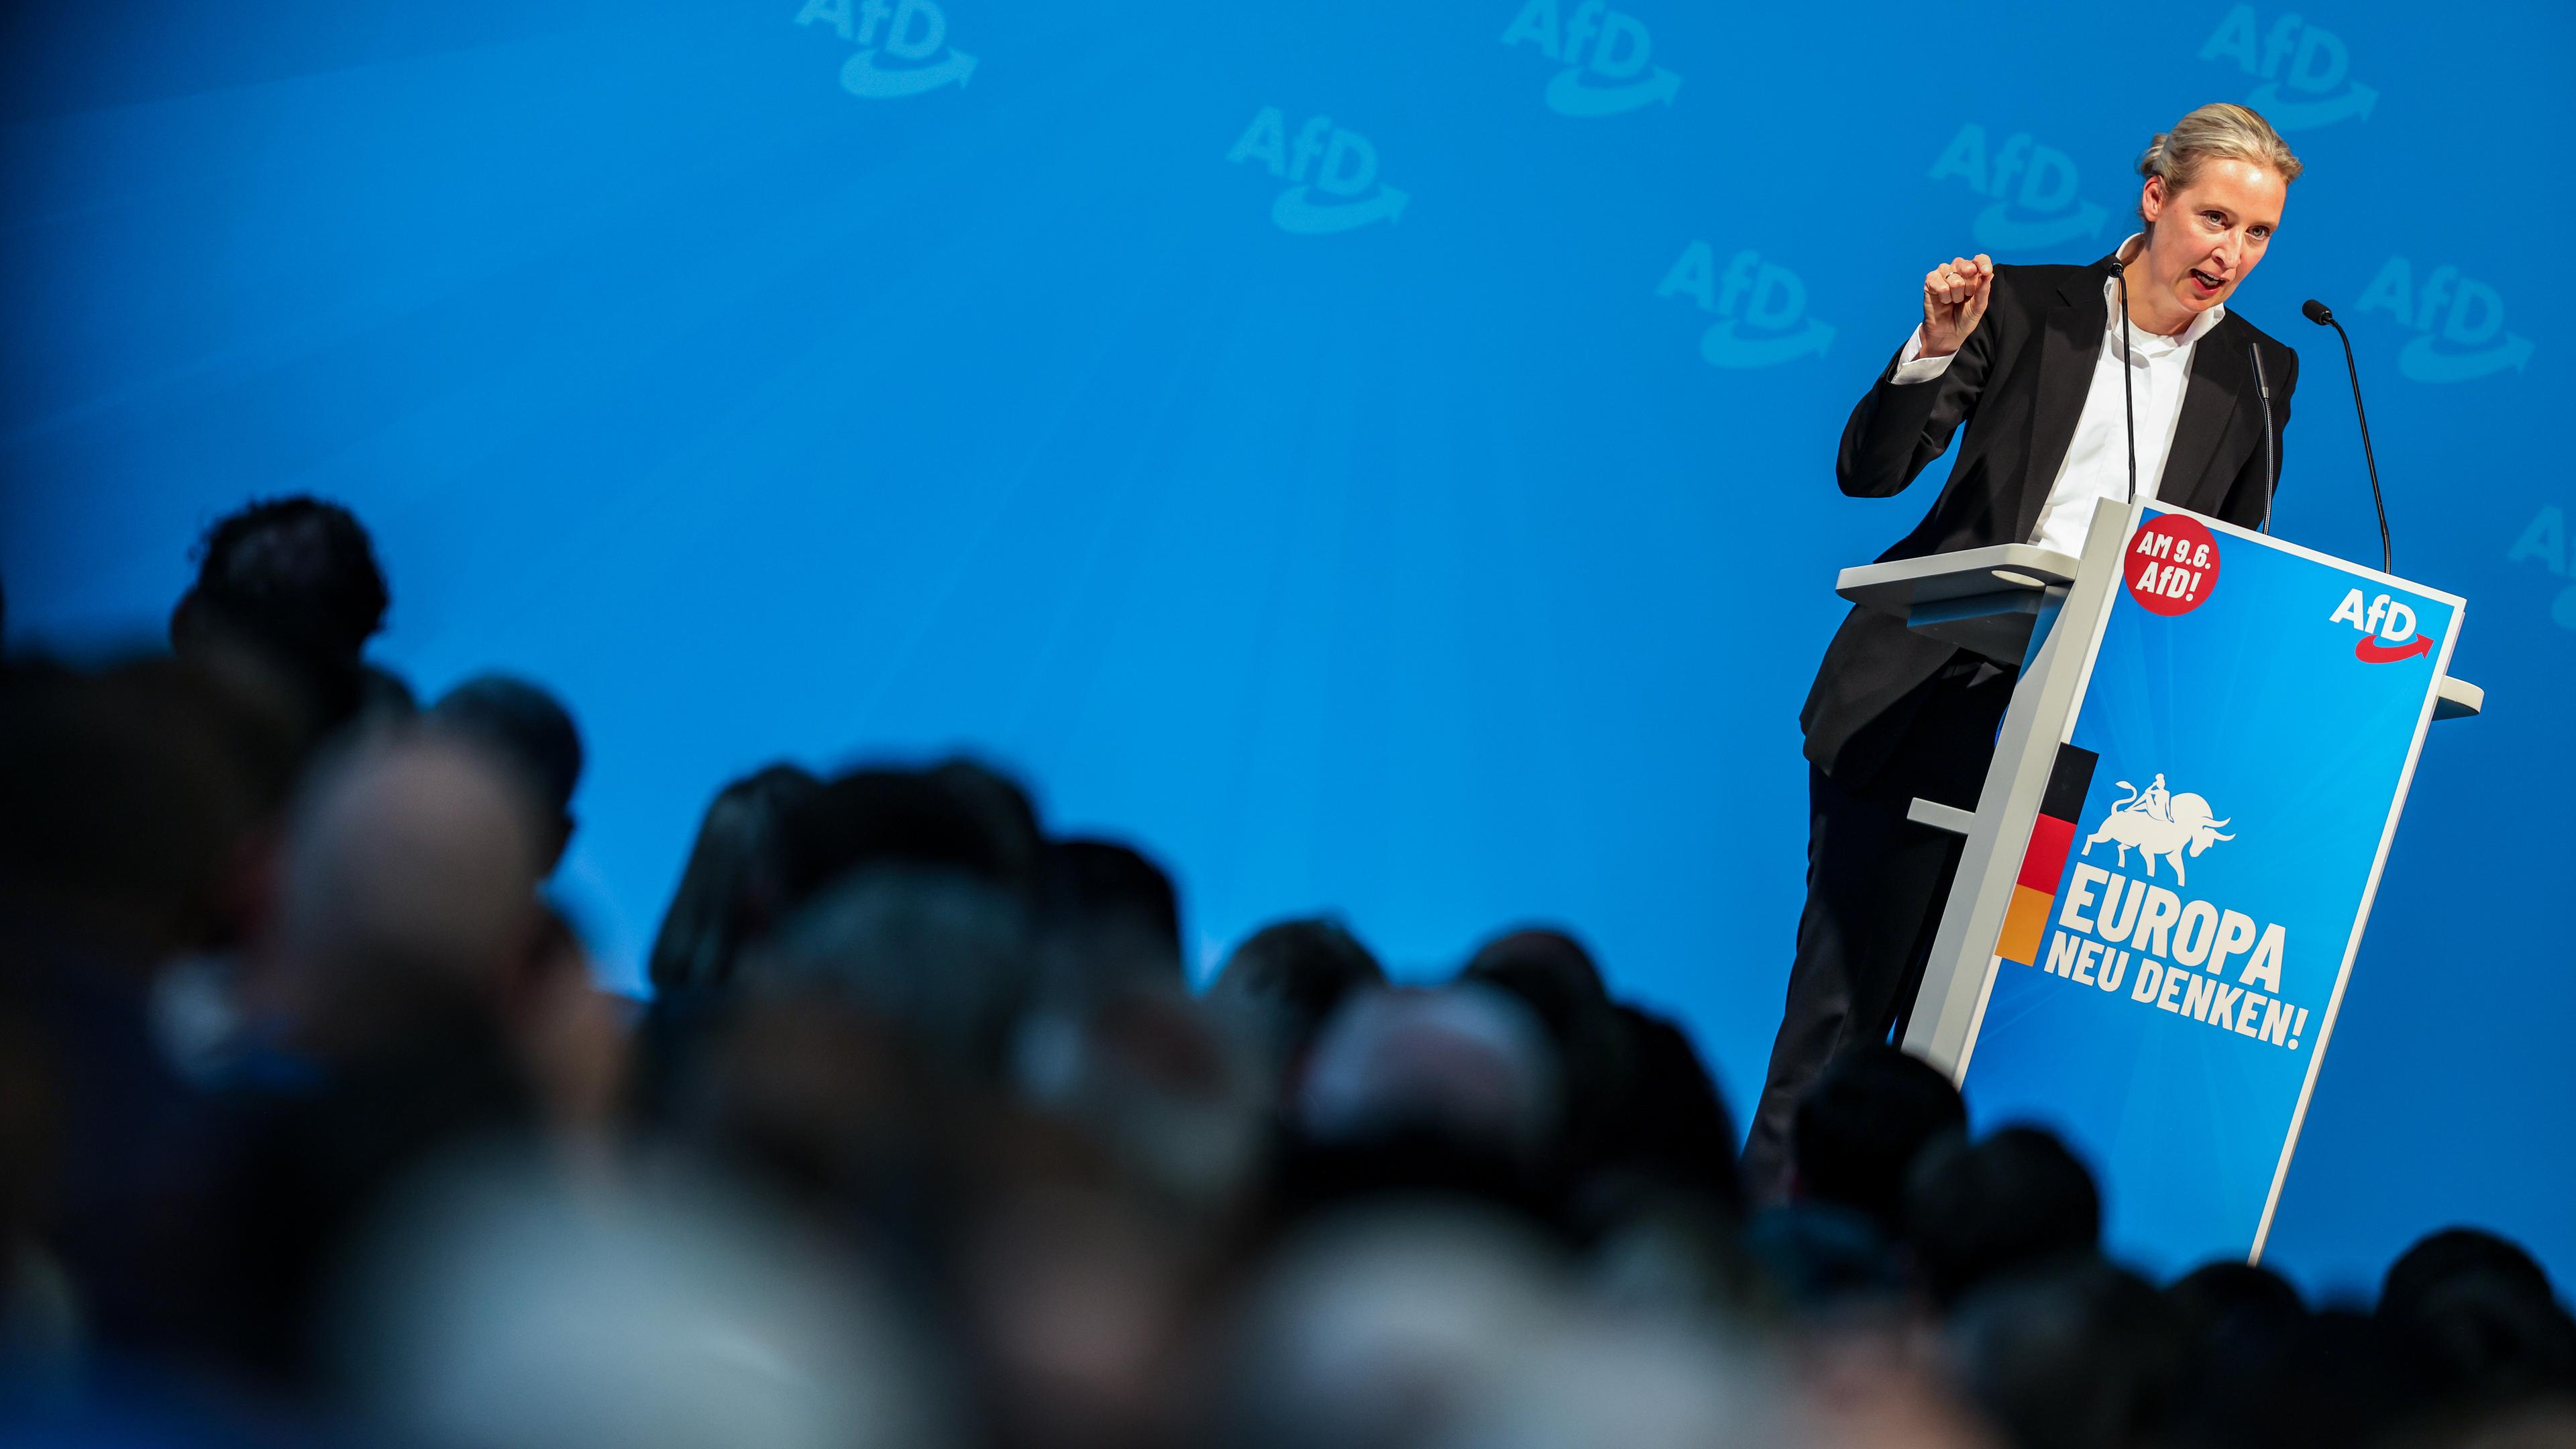 AfD-Parteivorsitzende Alice Weidel bei einem Wahlkampfauftritt in Nordrhein-Westfalen am Samstag.